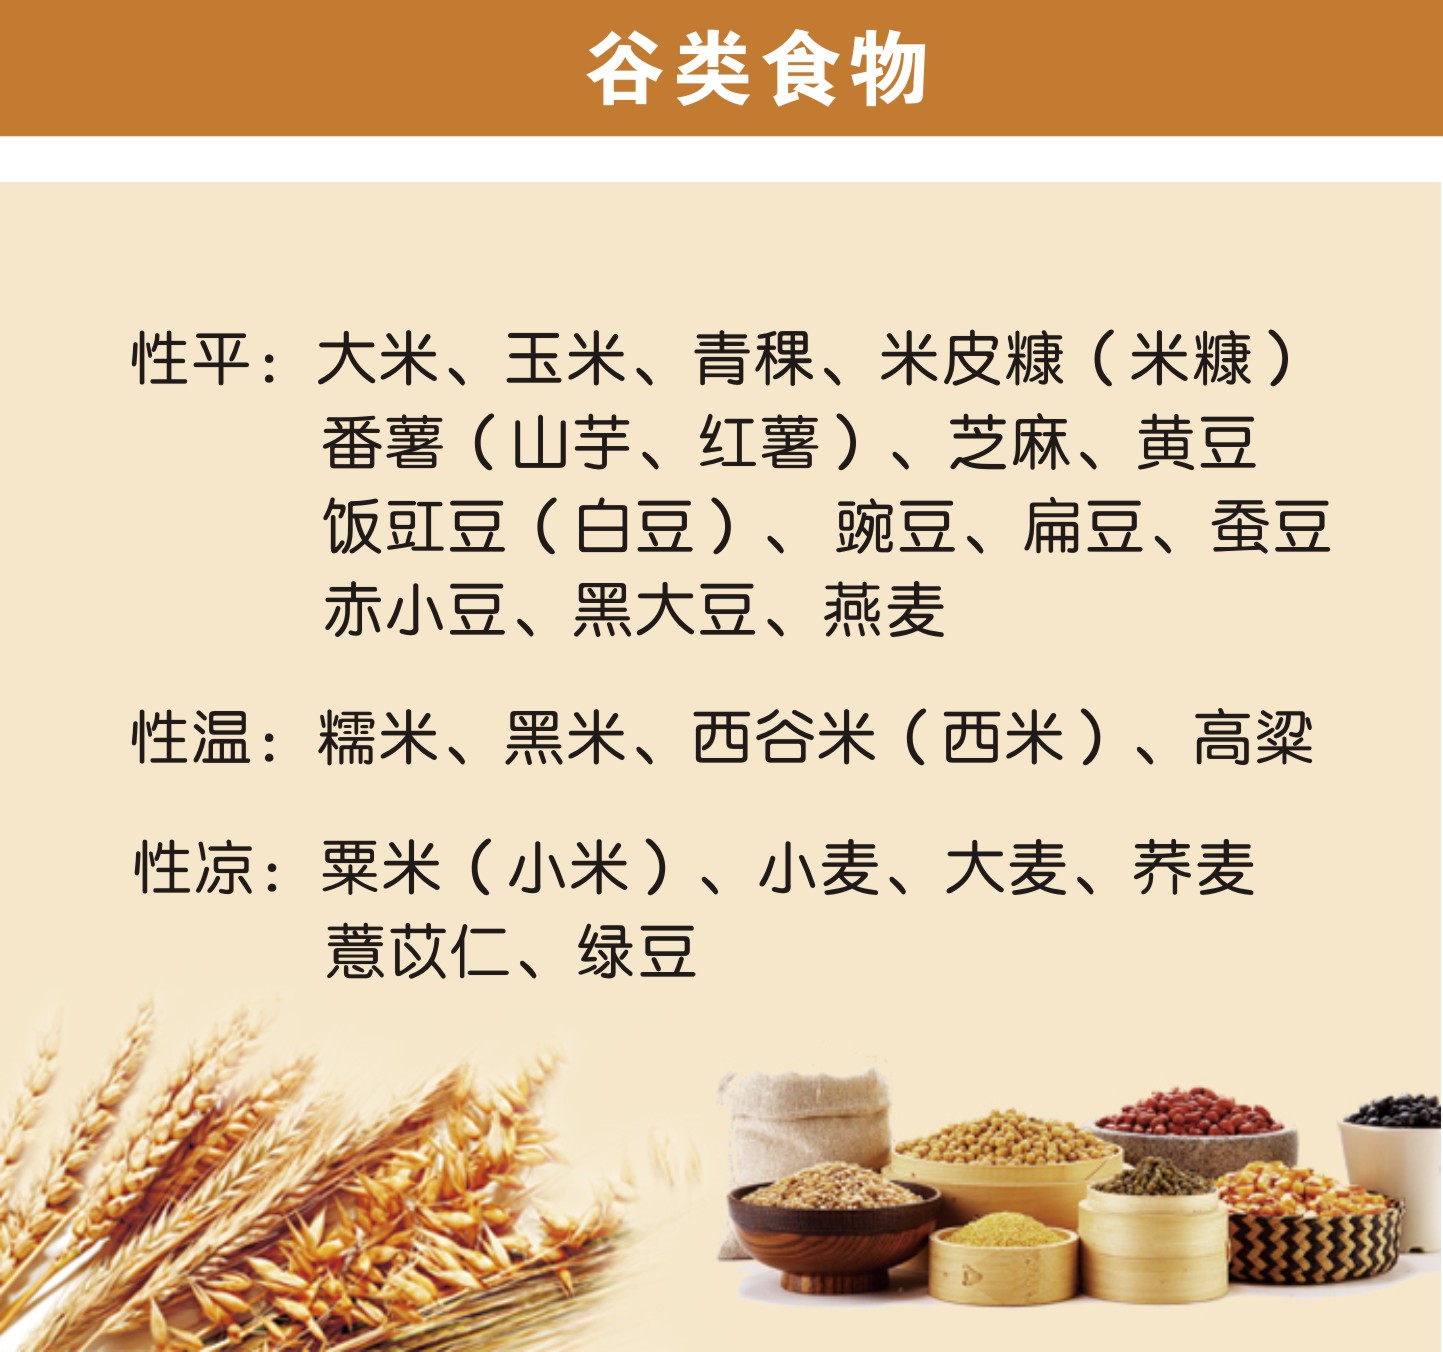 谷类食物 性平:大米,玉米,青稞,米皮糠(米糠 番薯(山芋,红薯)